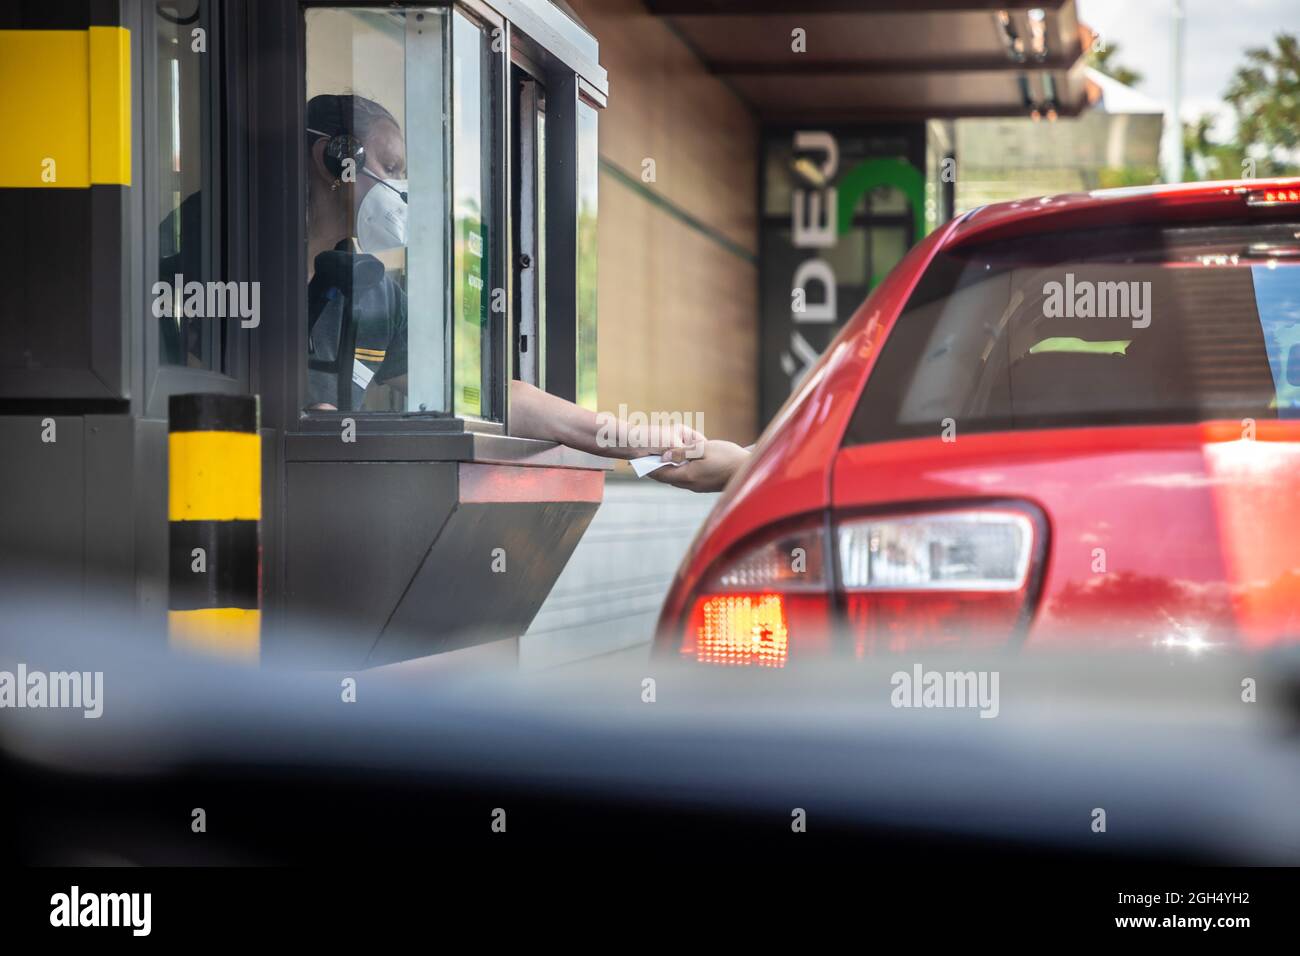 Praga, Repubblica Ceca - 11.08.2021: McDonald's ristorante, baying pasto in auto attraverso dalla macchina a Praga, Repubblica Ceca Foto Stock